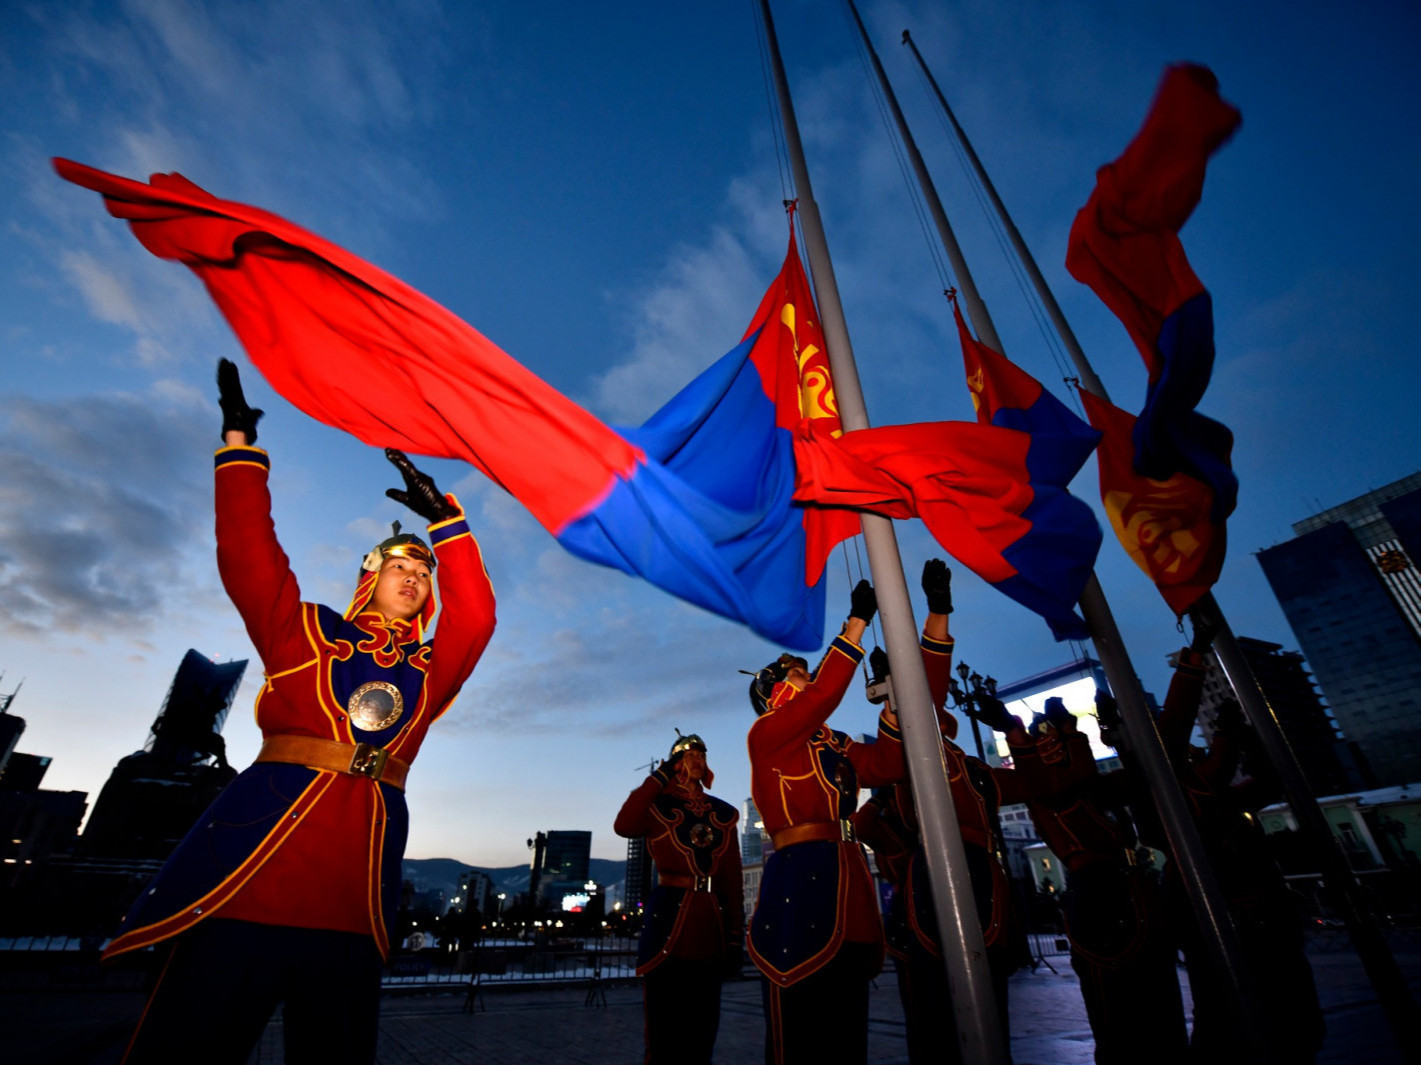 ФОТО: Монгол бахархлын өдрийг тохиолдуулан "Төрийн далбааг мандуулах" ёслол өглөө 07:30 цагт боллоо